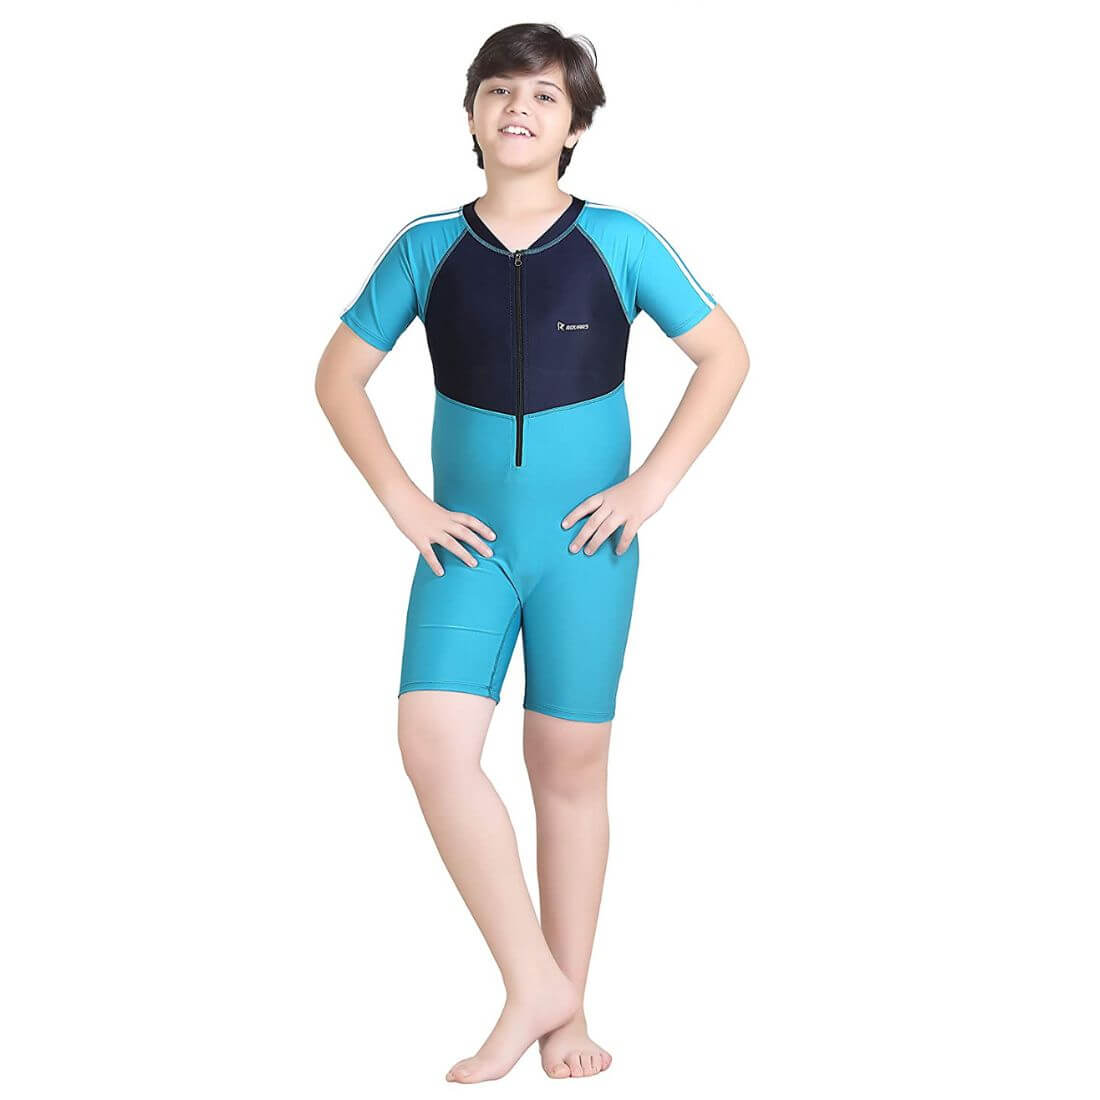 Speedo Swimwear | Swim Gear and Swim Accessories | Speedo